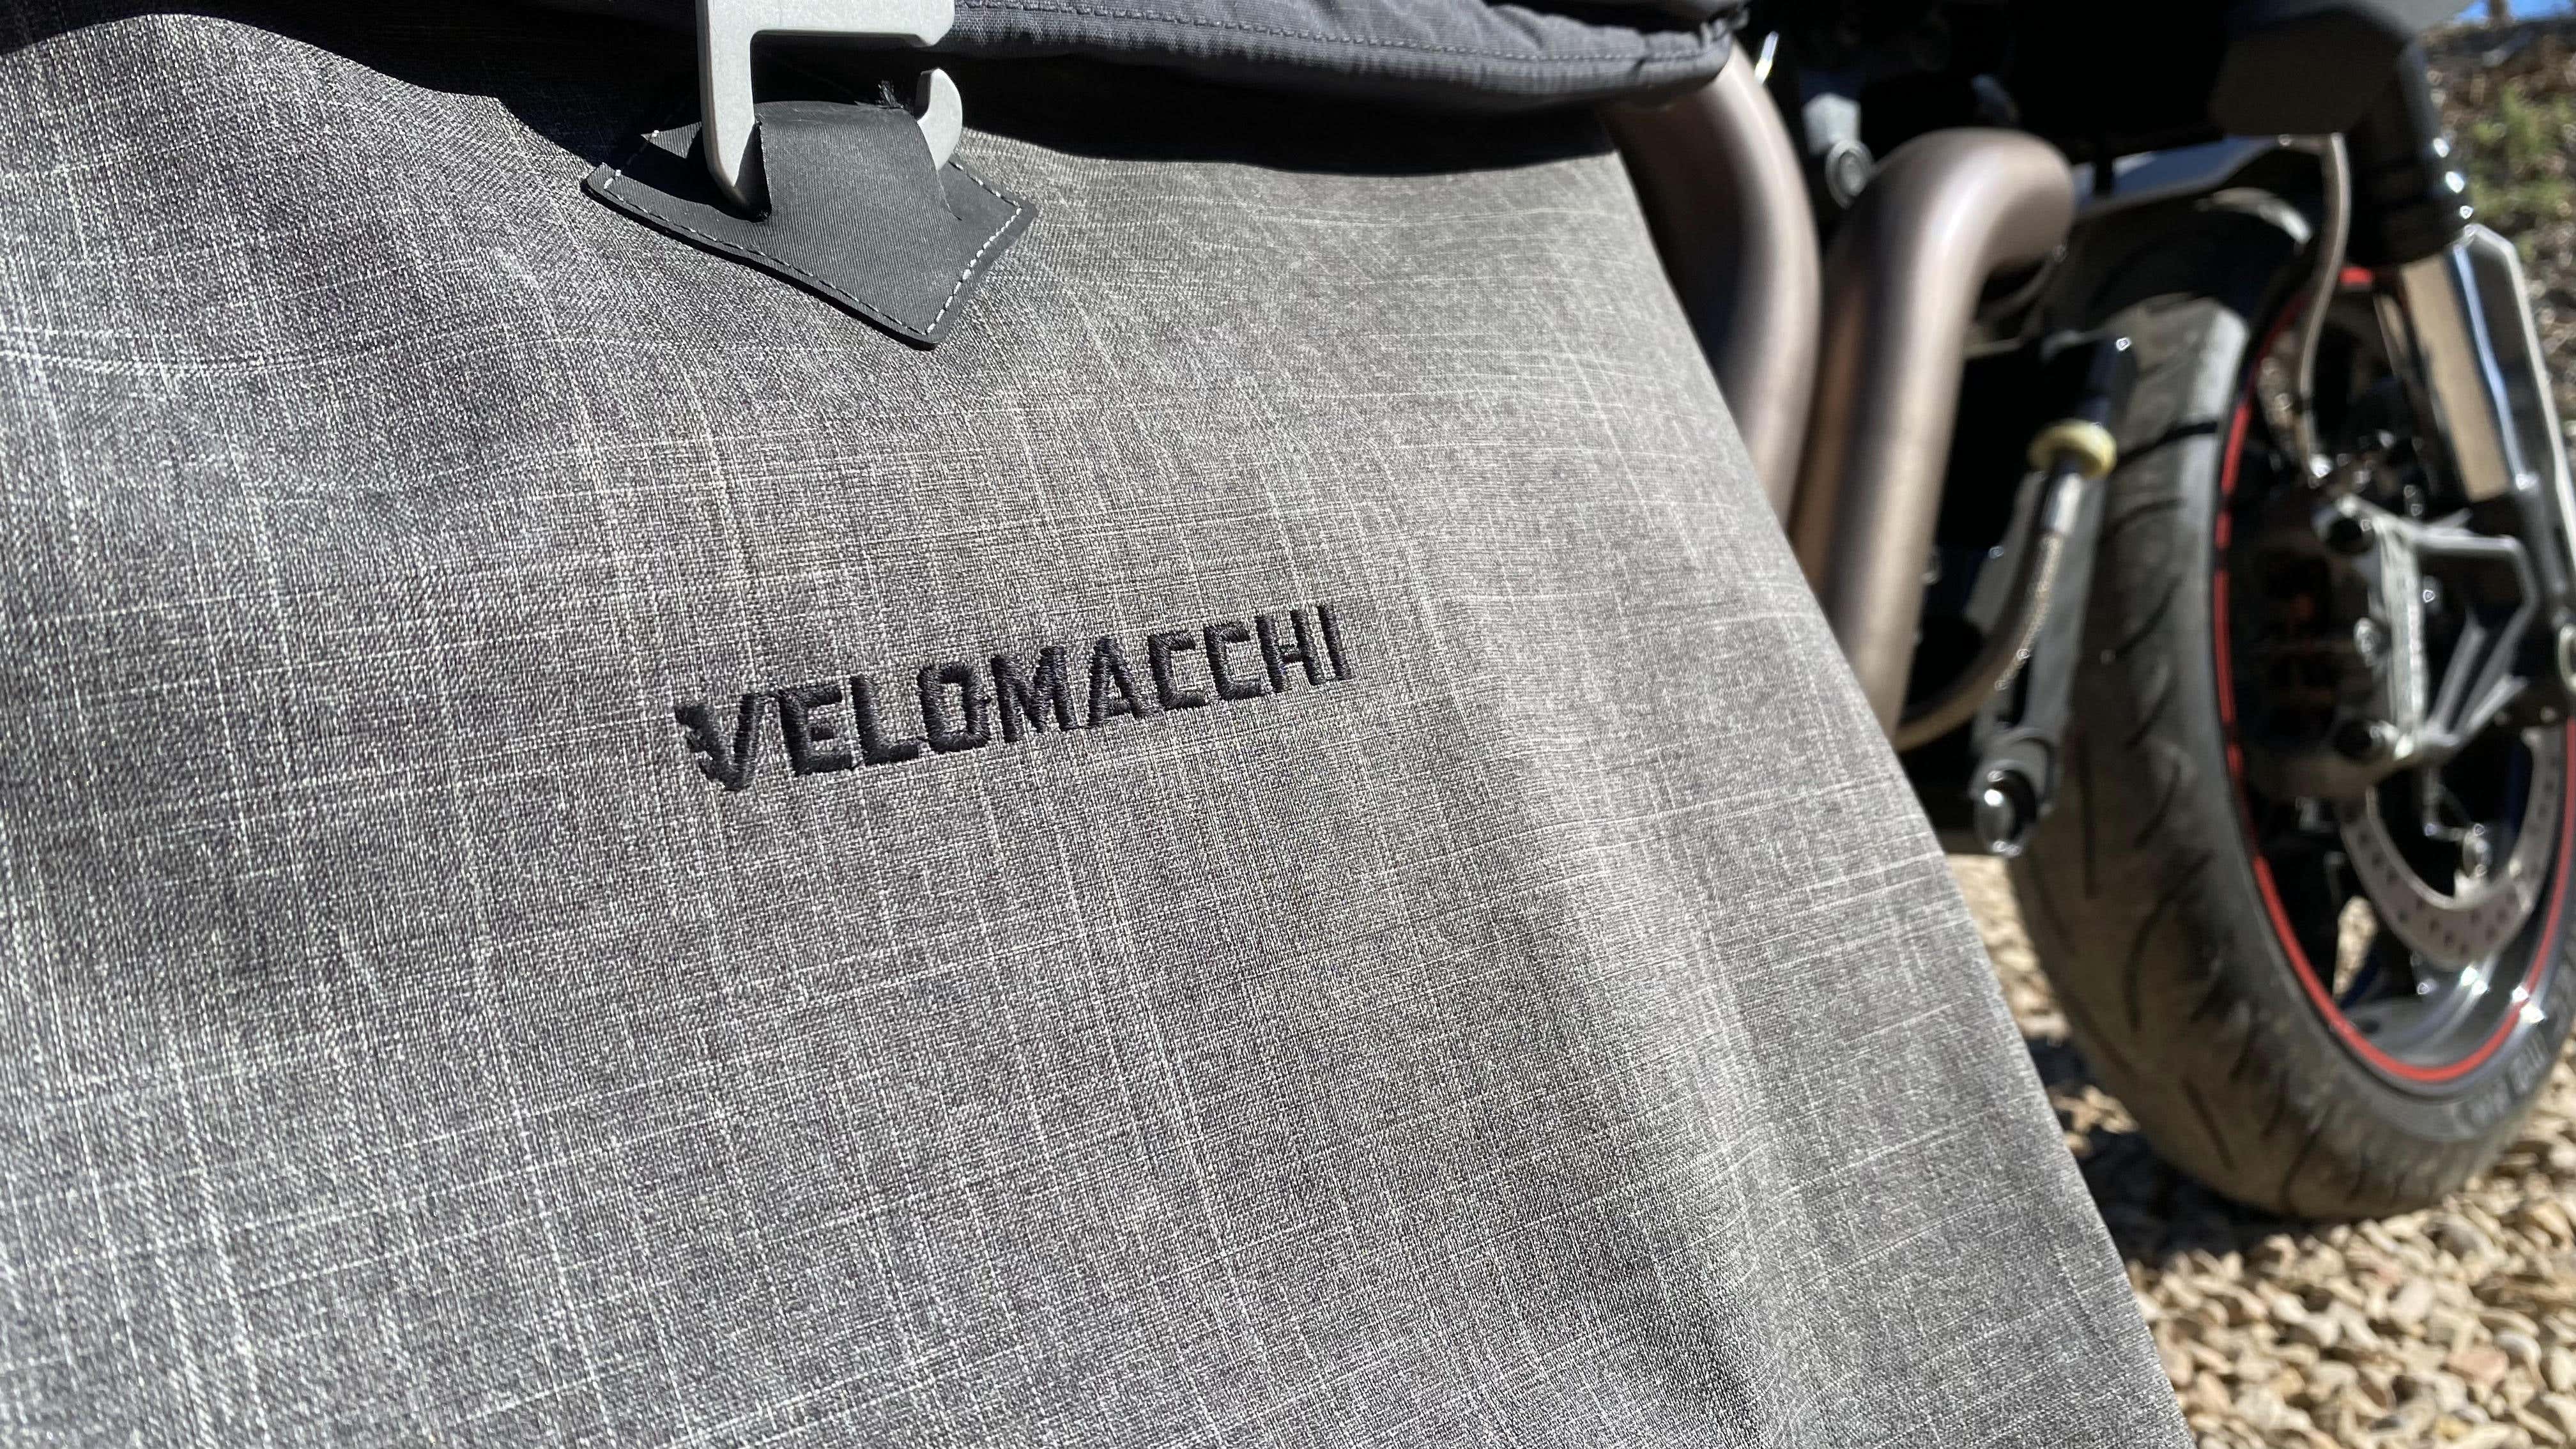 Velomacchi's 35L Giro backpack.